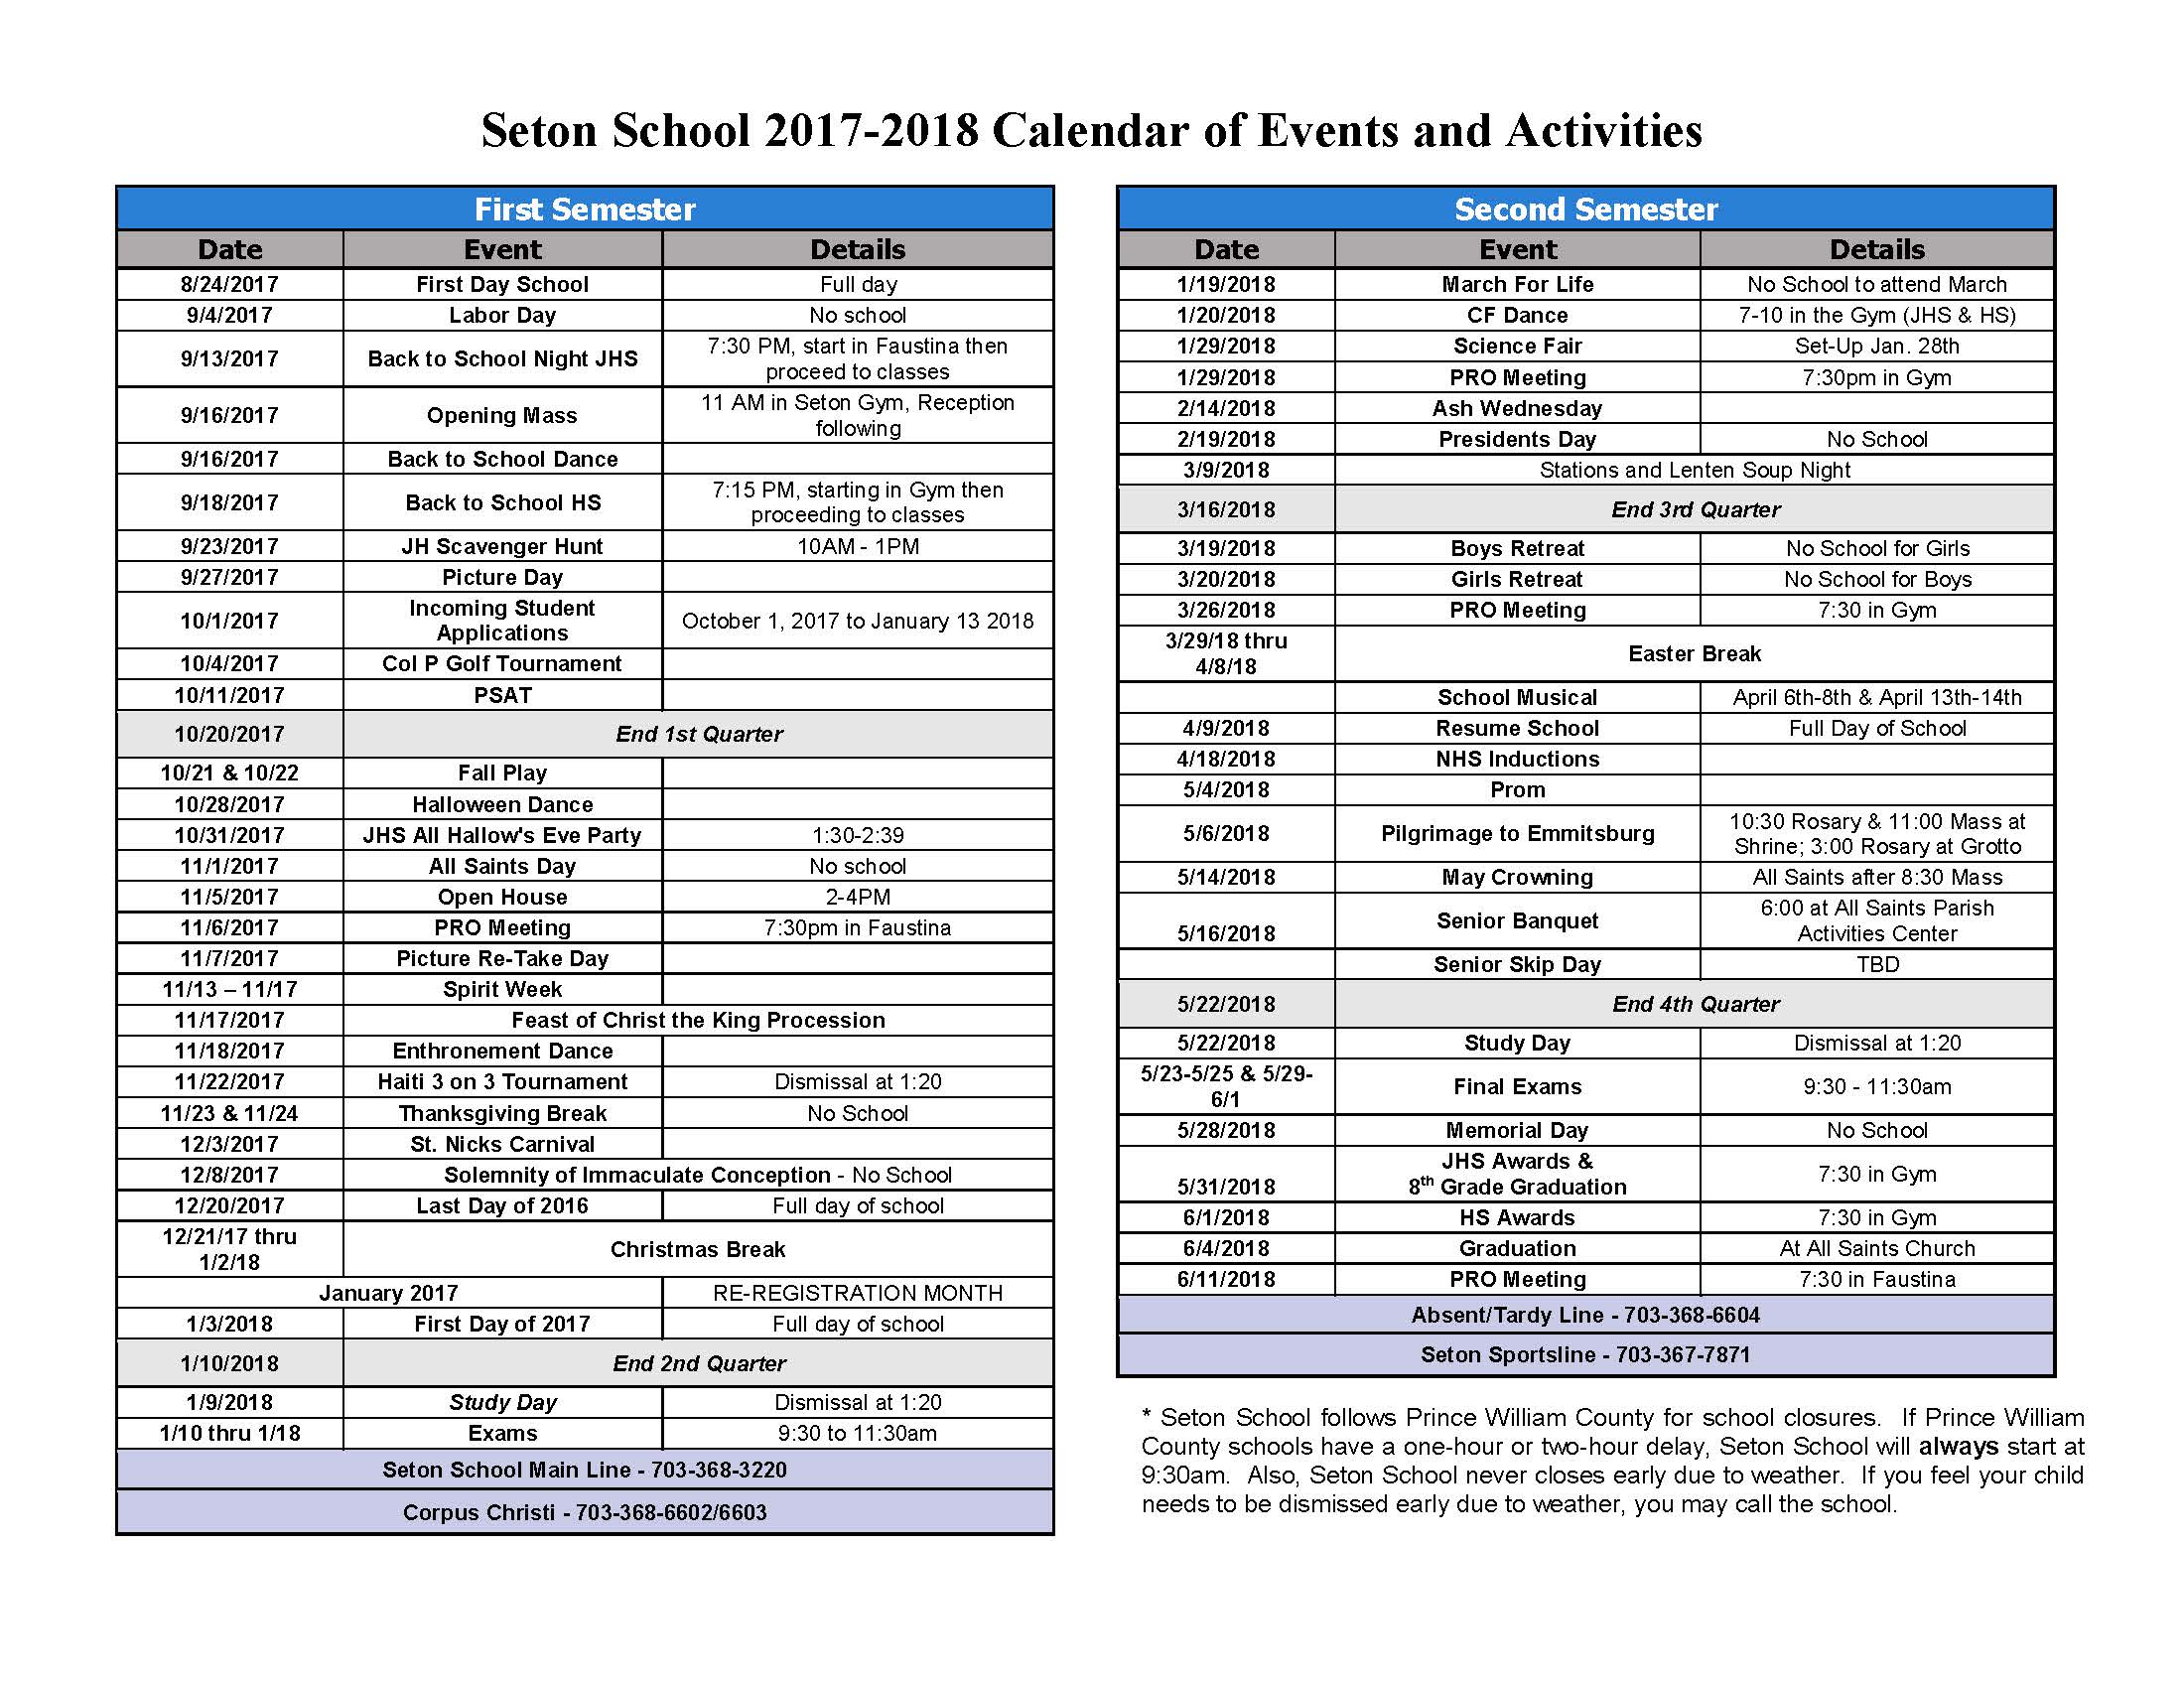 Seton School Calendar of Events and Activities UPDATED Seton School